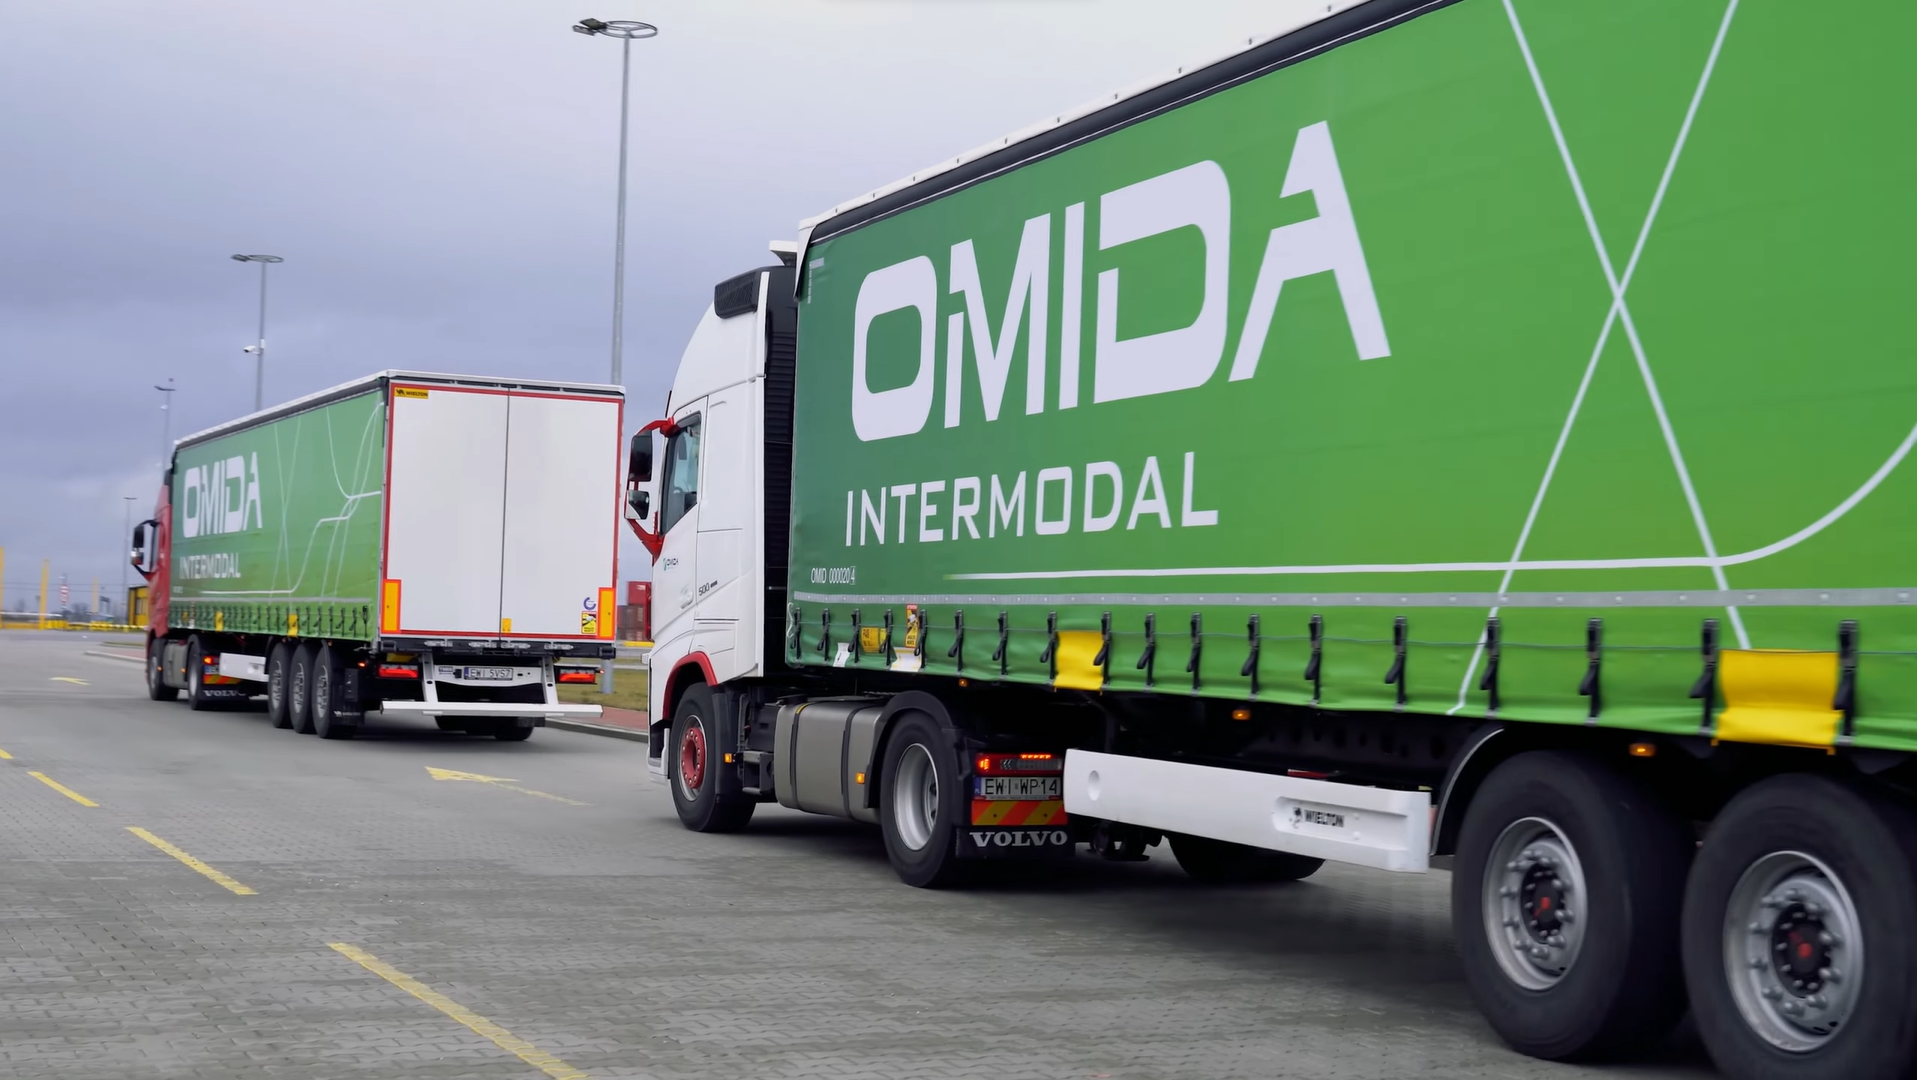 Transport drogowy — Omida Intermodal